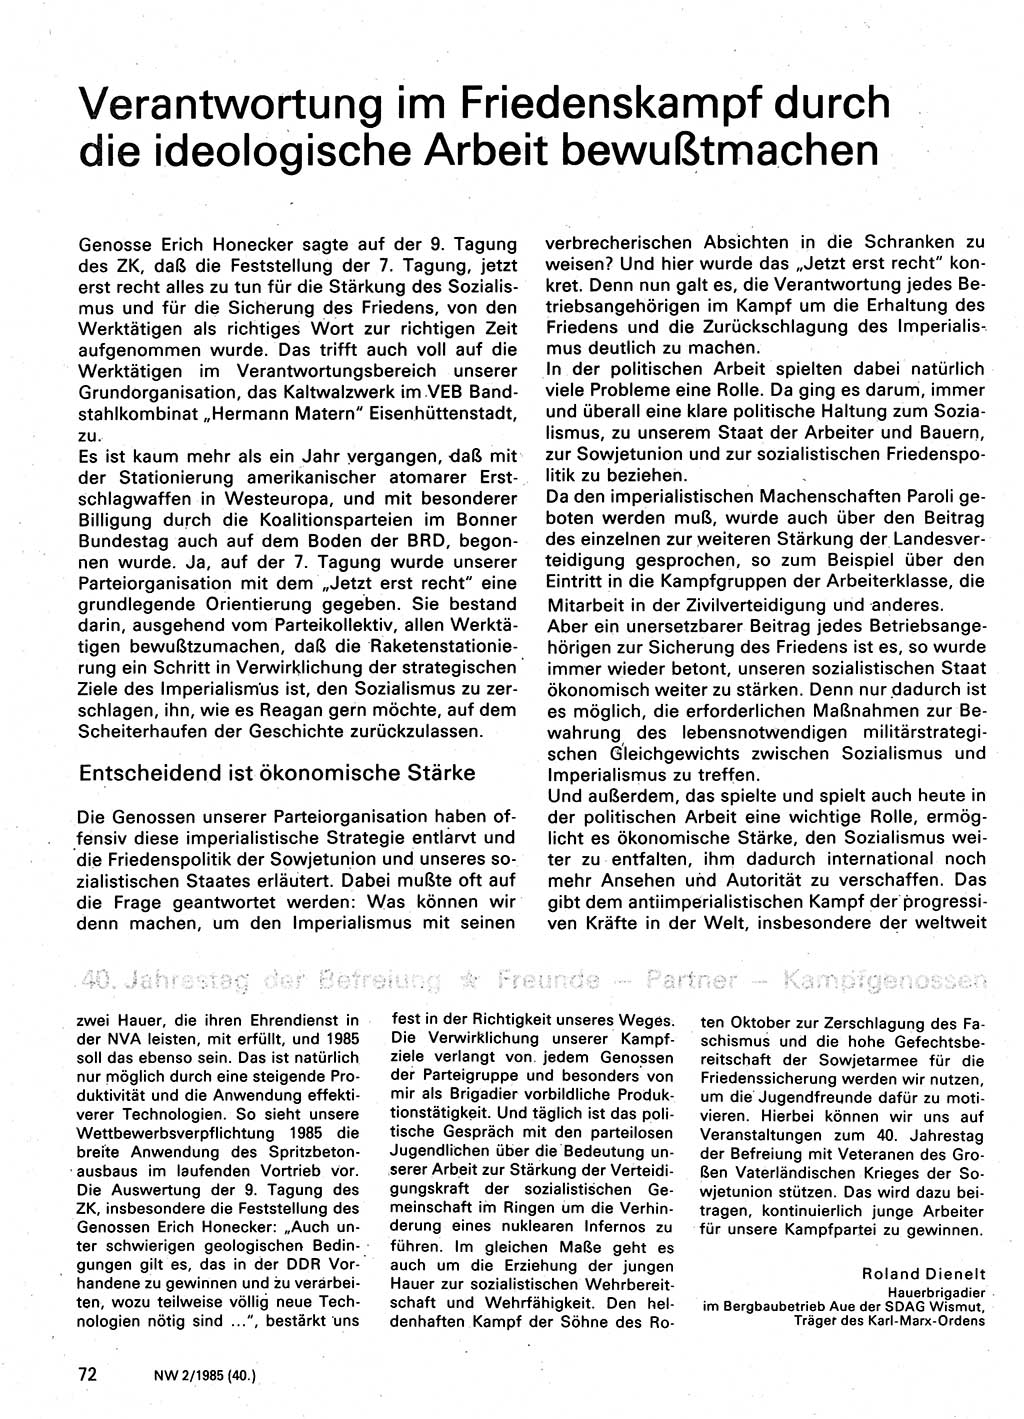 Neuer Weg (NW), Organ des Zentralkomitees (ZK) der SED (Sozialistische Einheitspartei Deutschlands) für Fragen des Parteilebens, 40. Jahrgang [Deutsche Demokratische Republik (DDR)] 1985, Seite 72 (NW ZK SED DDR 1985, S. 72)